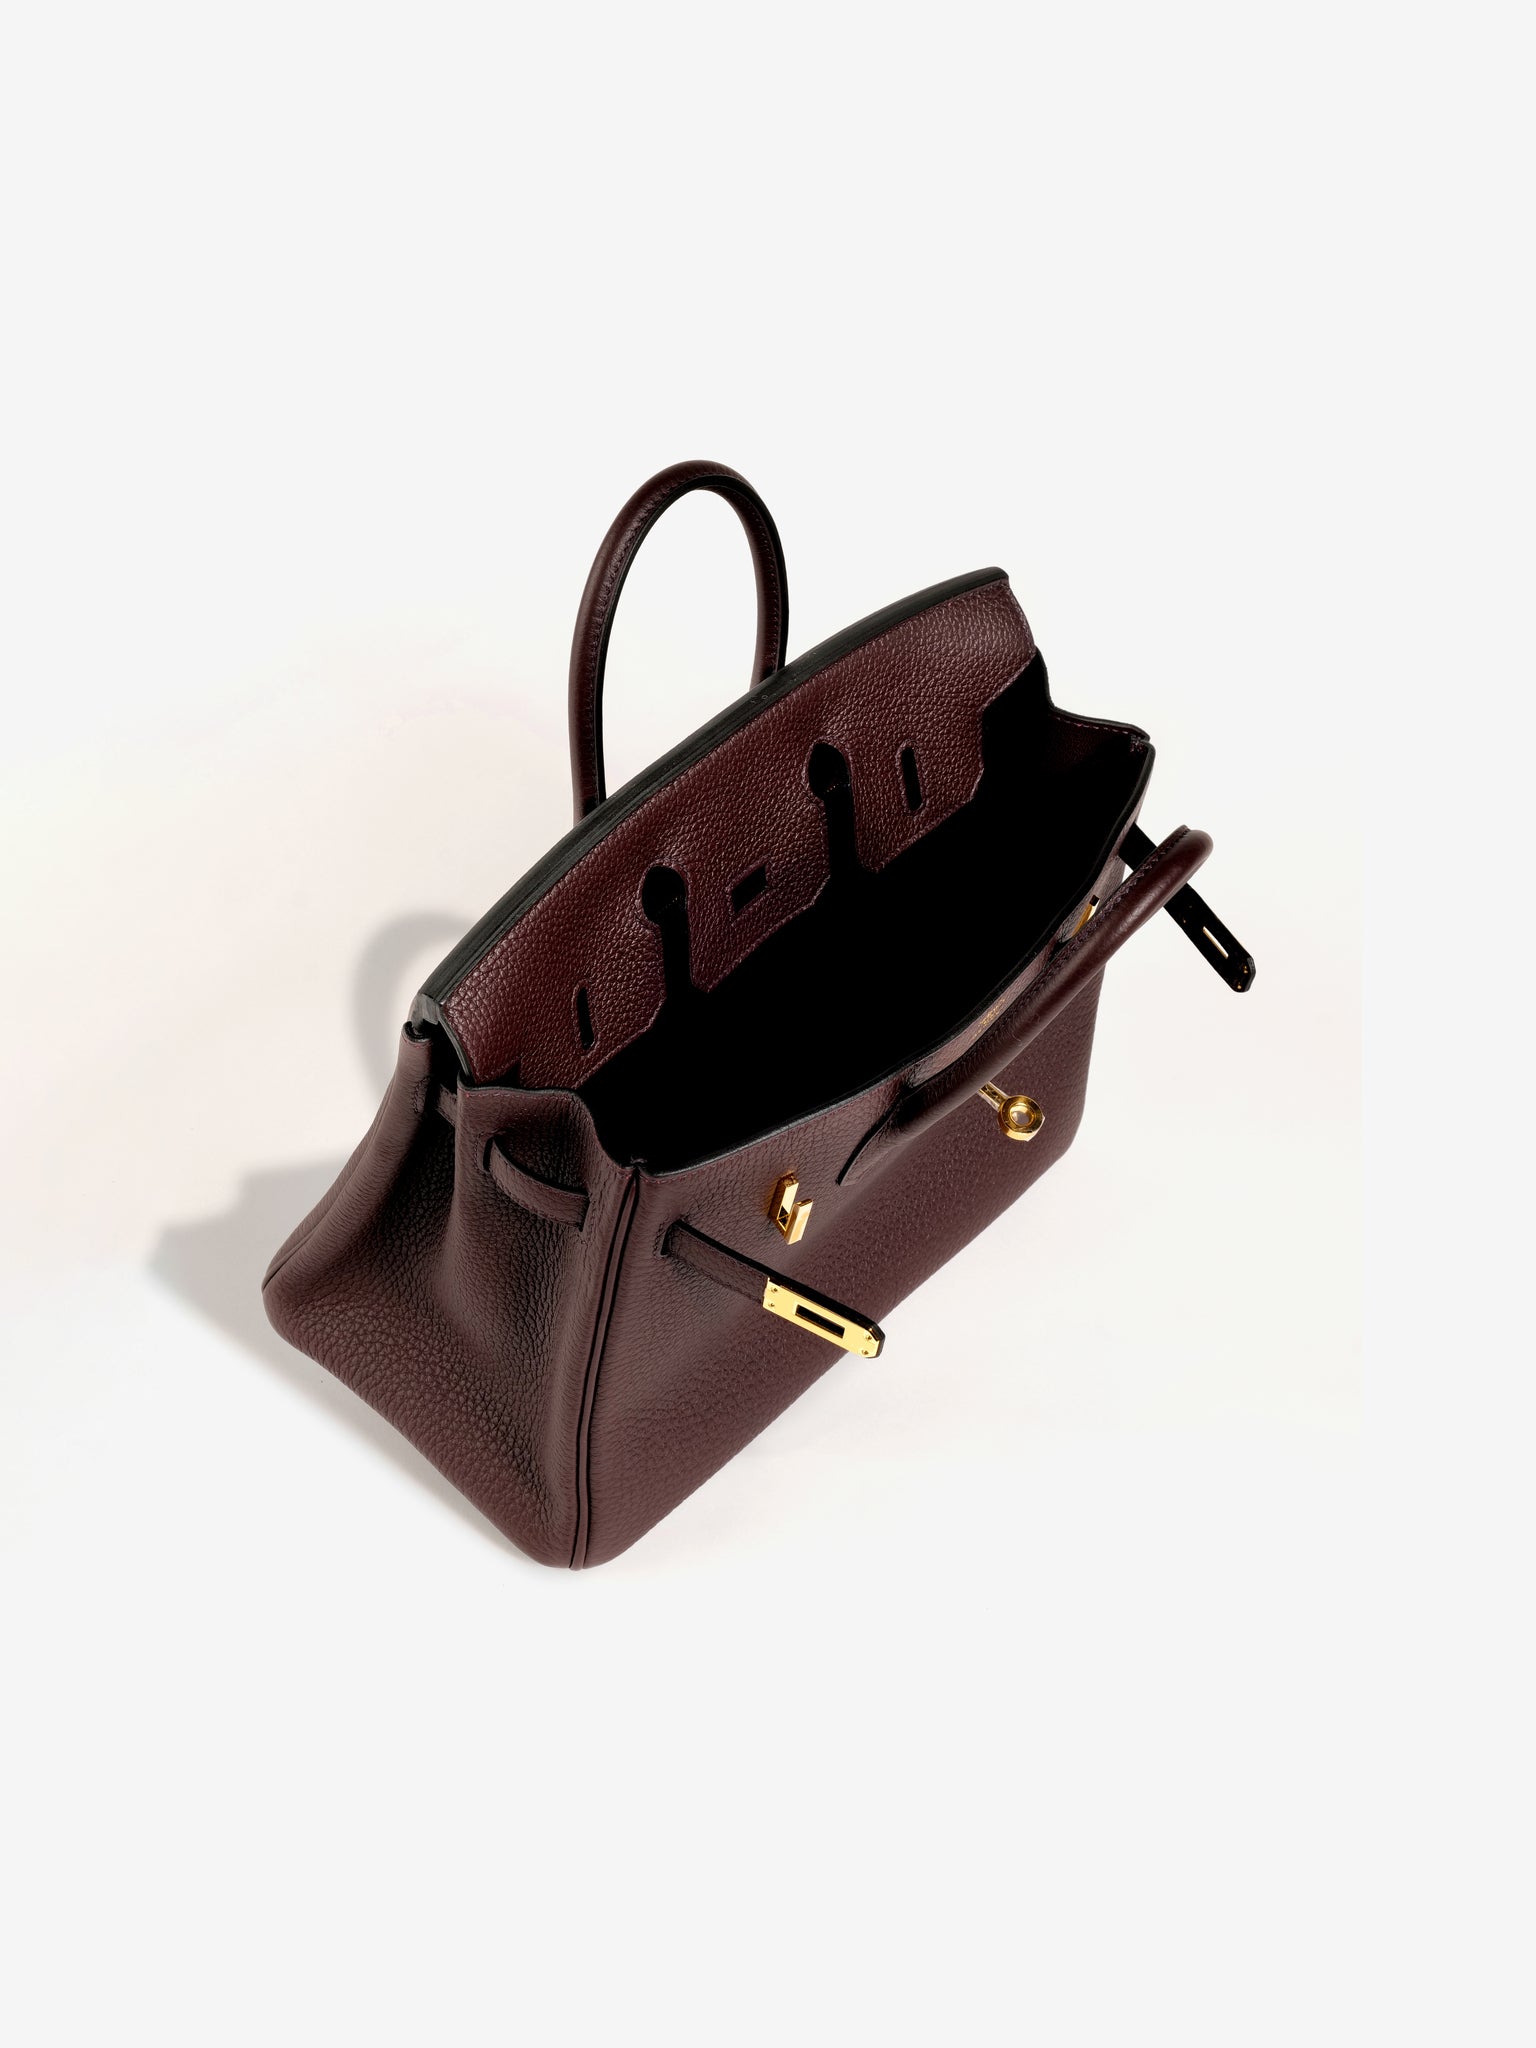 Hermes Birkin bag 25 Rouge sellier Togo leather Gold hardware